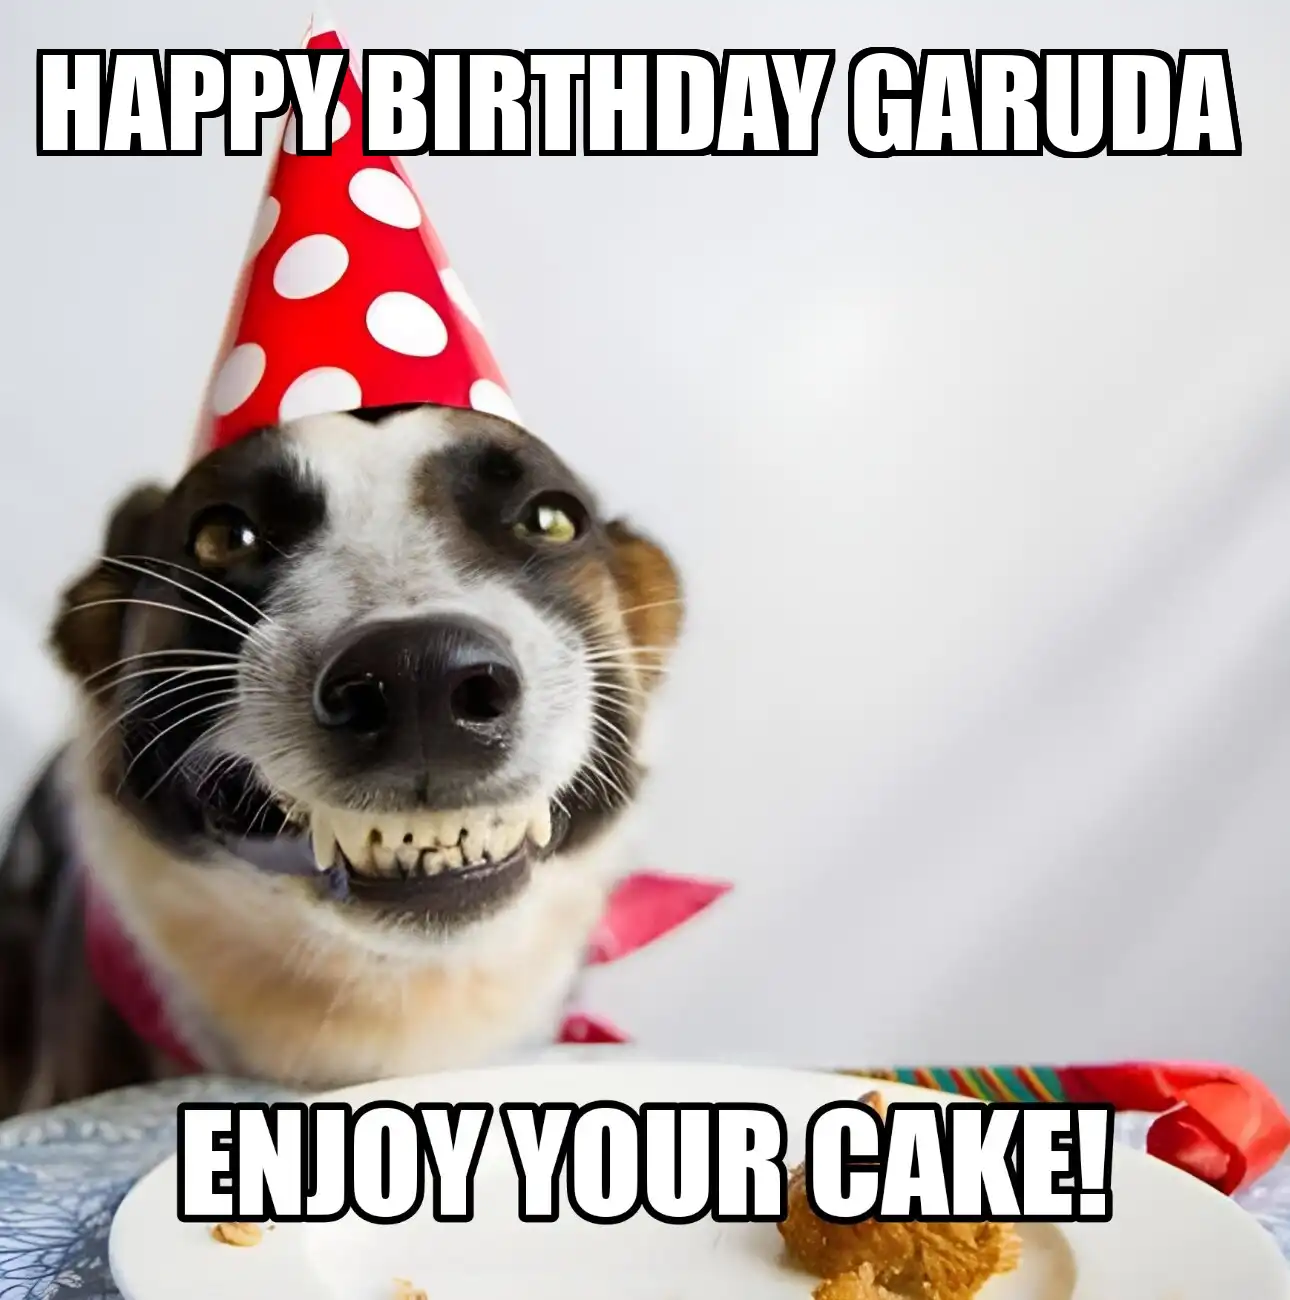 Happy Birthday Garuda Enjoy Your Cake Dog Meme